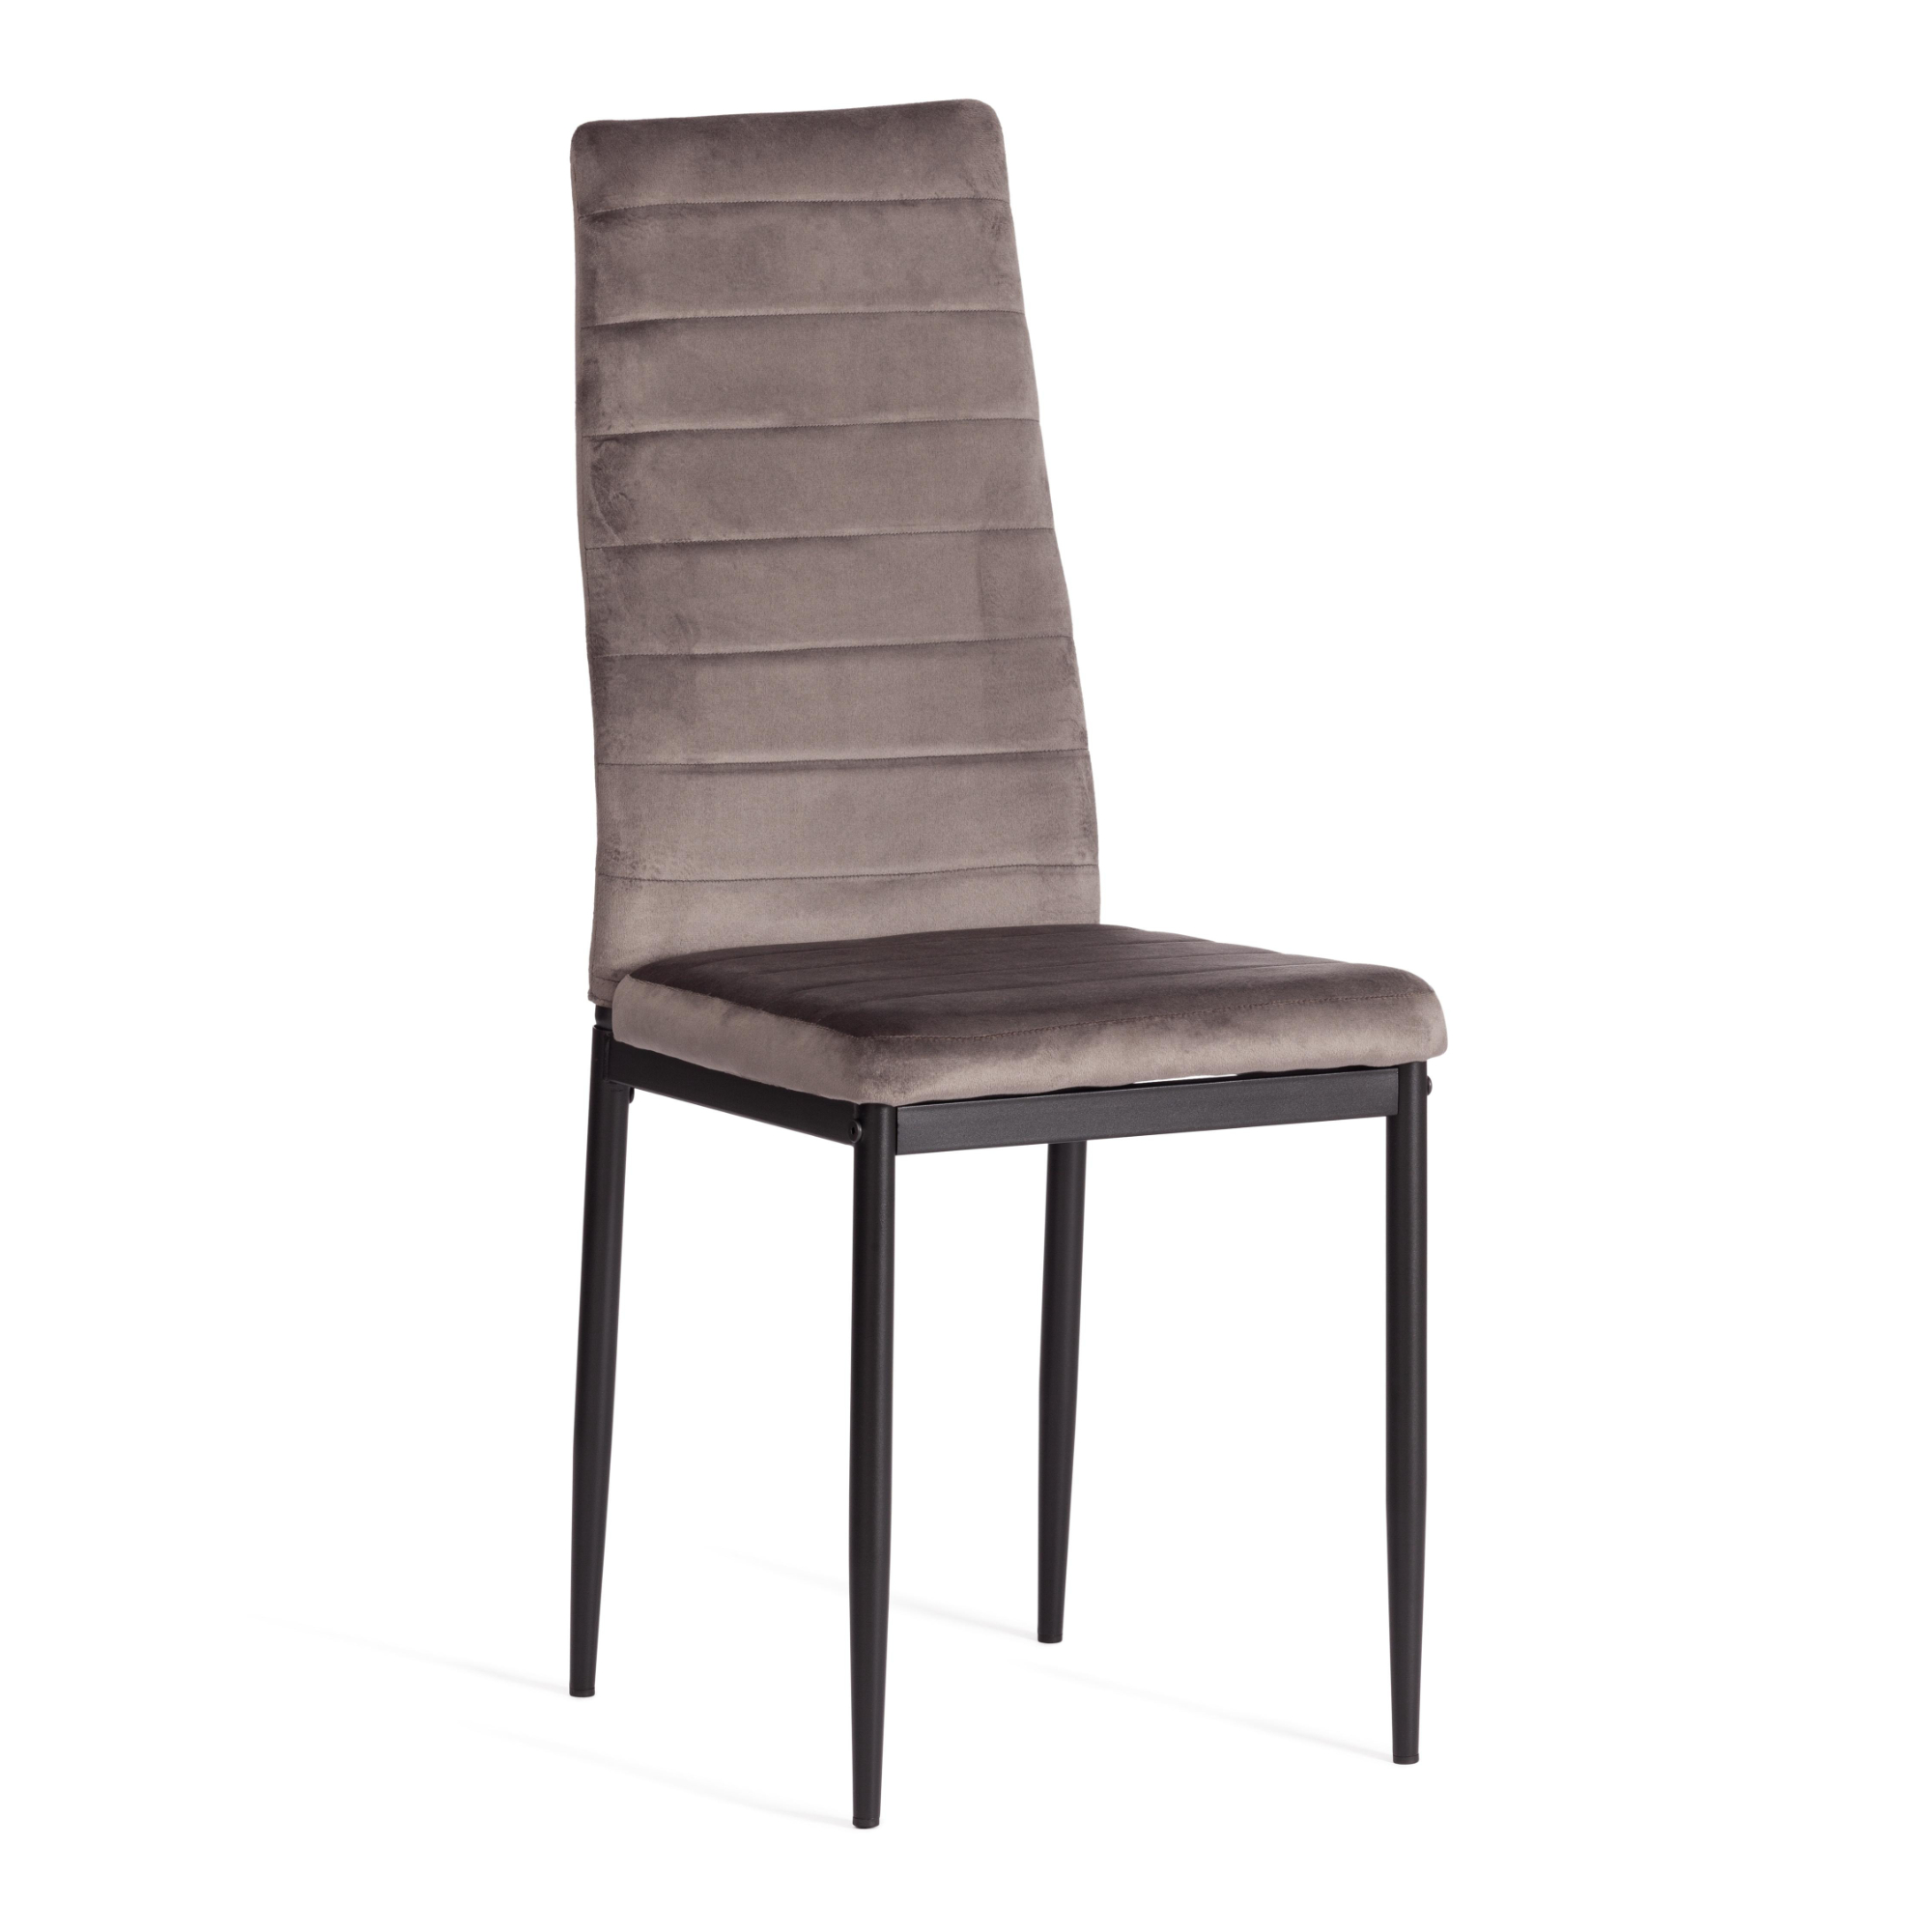 стул пластиковый усиленный стекловолокном для дома и спальни кабинета гостиной комбинированный стол и стул маленький низкий стул для ры Стул ТС Easy вельвет темно-серый с черным 49х41х98 см